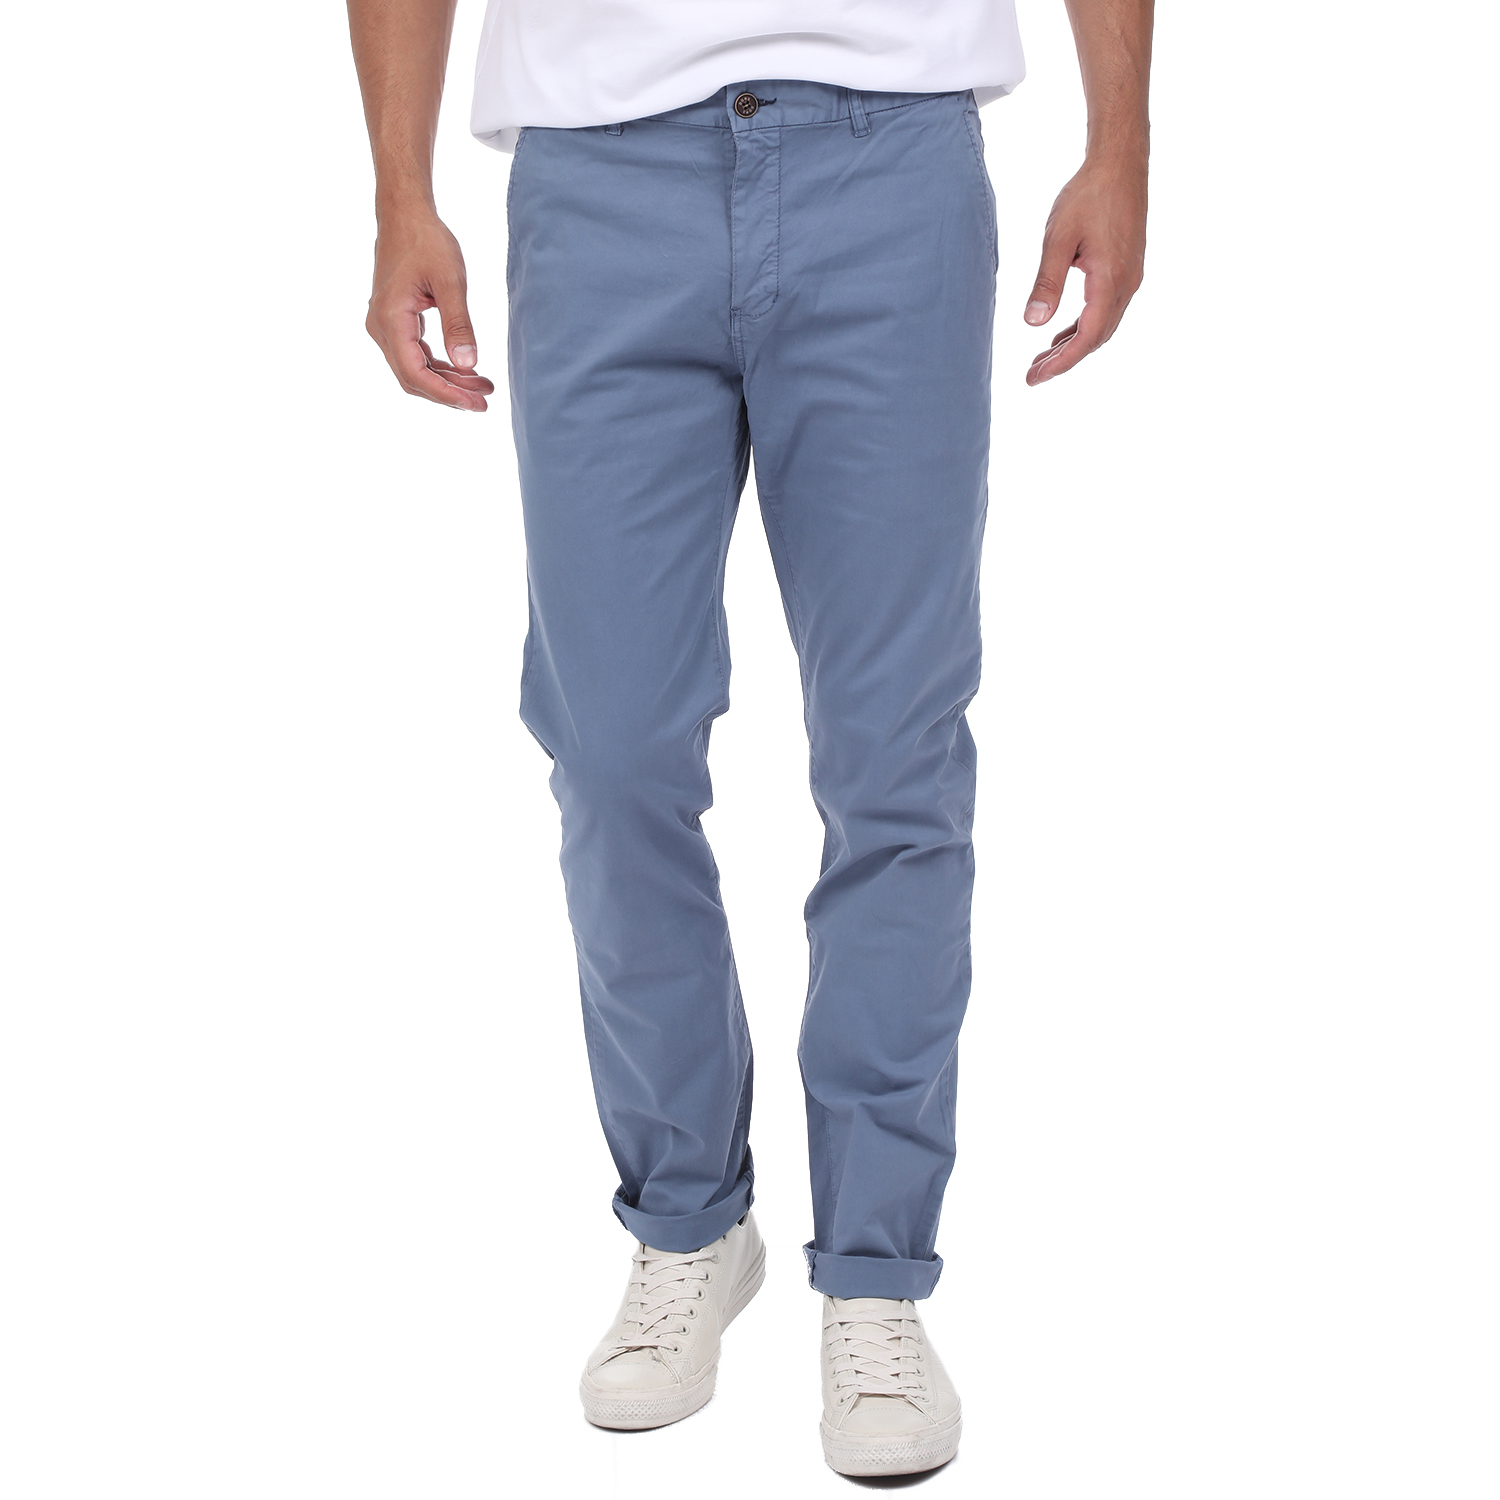 Ανδρικά/Ρούχα/Παντελόνια/Chinos DORS - Ανδρικό chino παντελόνι DORS μπλε